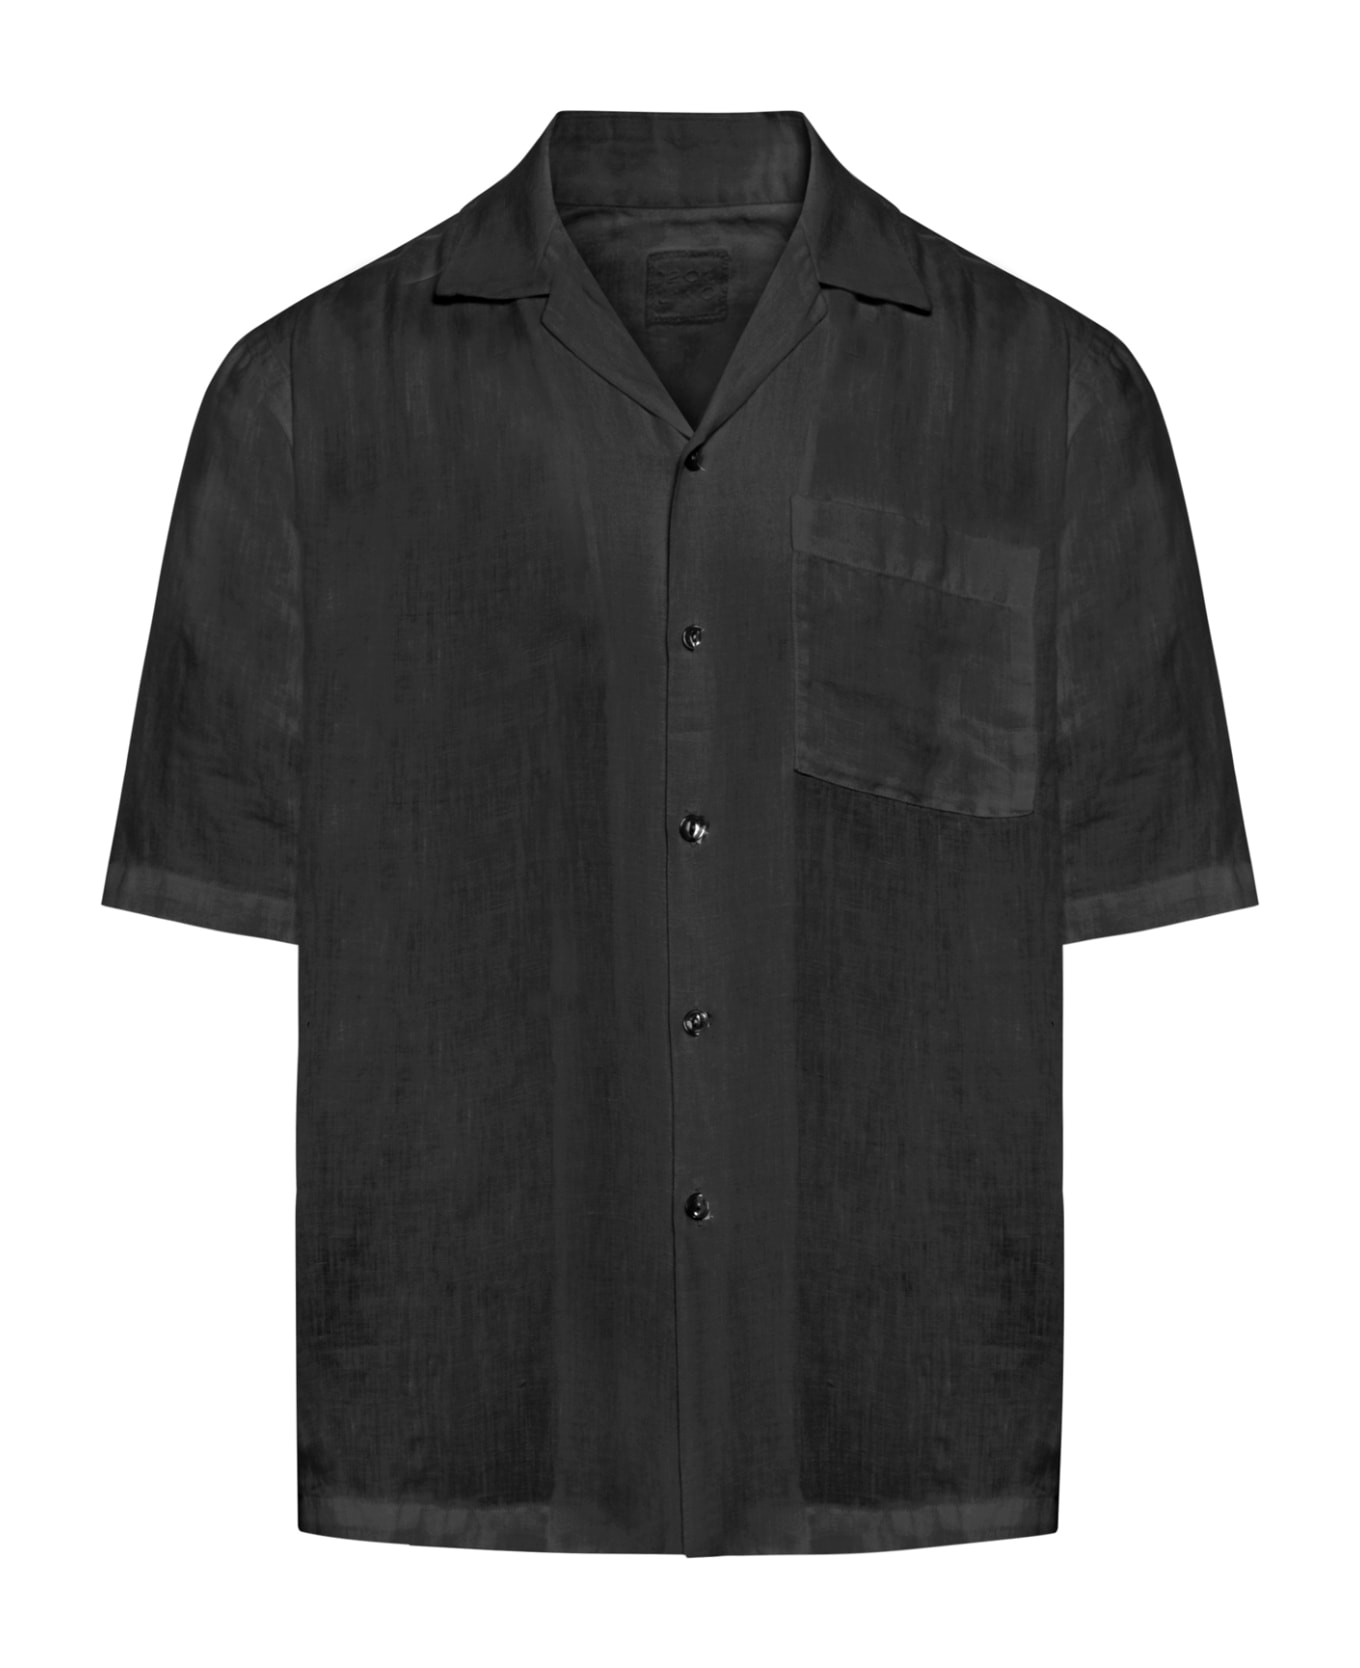 120% Lino Short Sleeve Men Shirt - Black シャツ